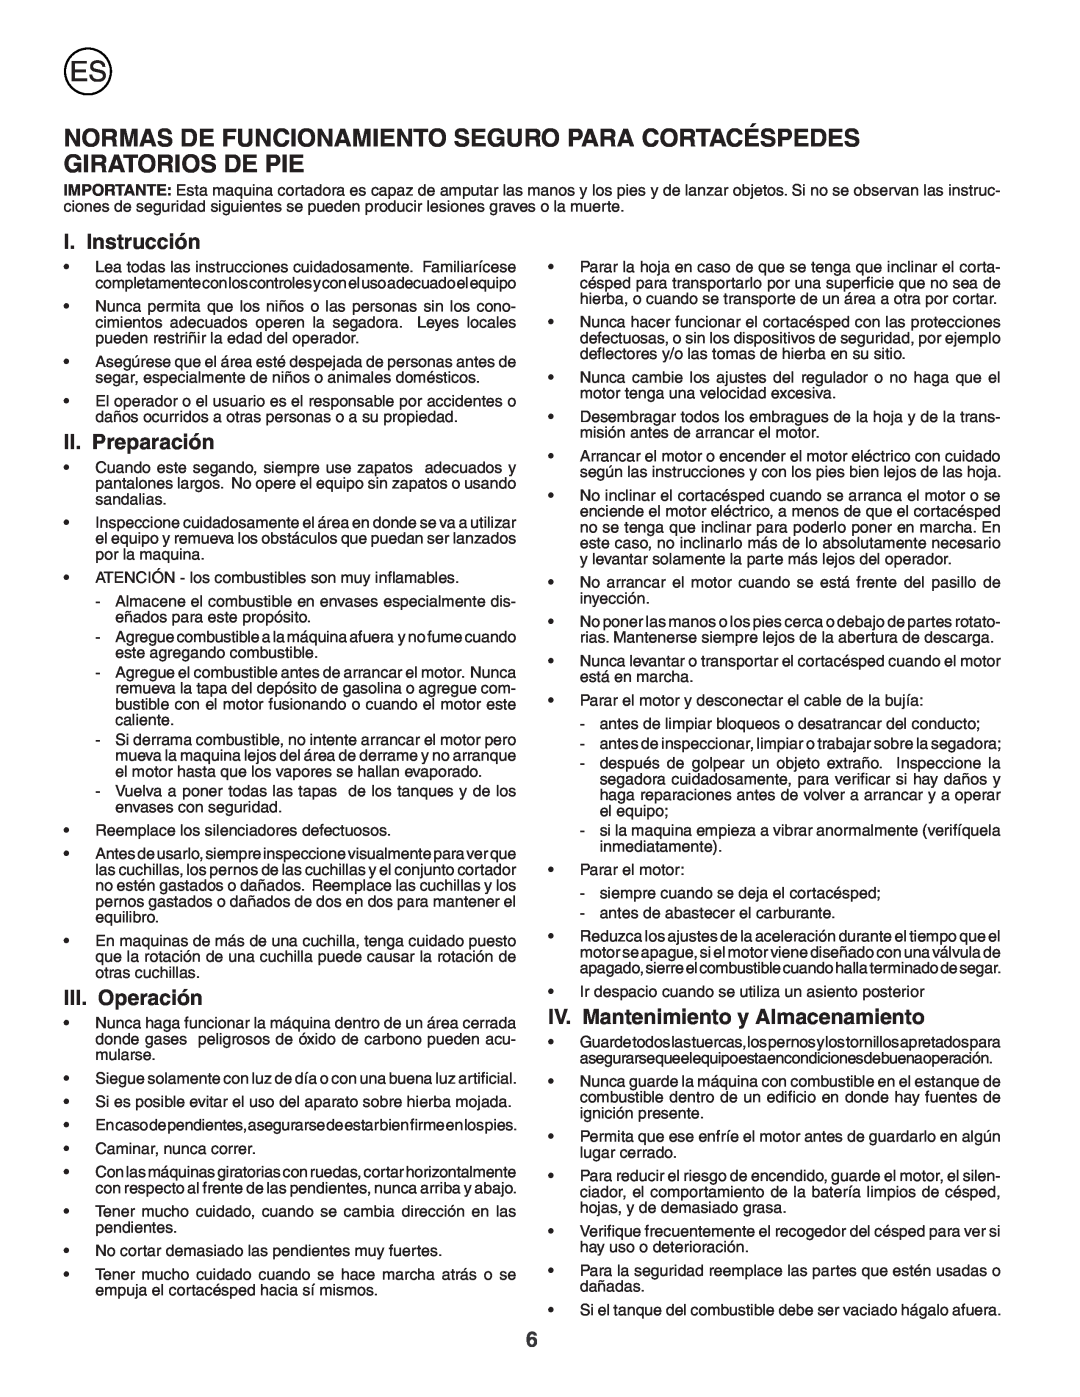 Husqvarna J50S Normas De Funcionamiento Seguro Para Cortacéspedes Giratorios De Pie, I. Instrucción, II. Preparación 